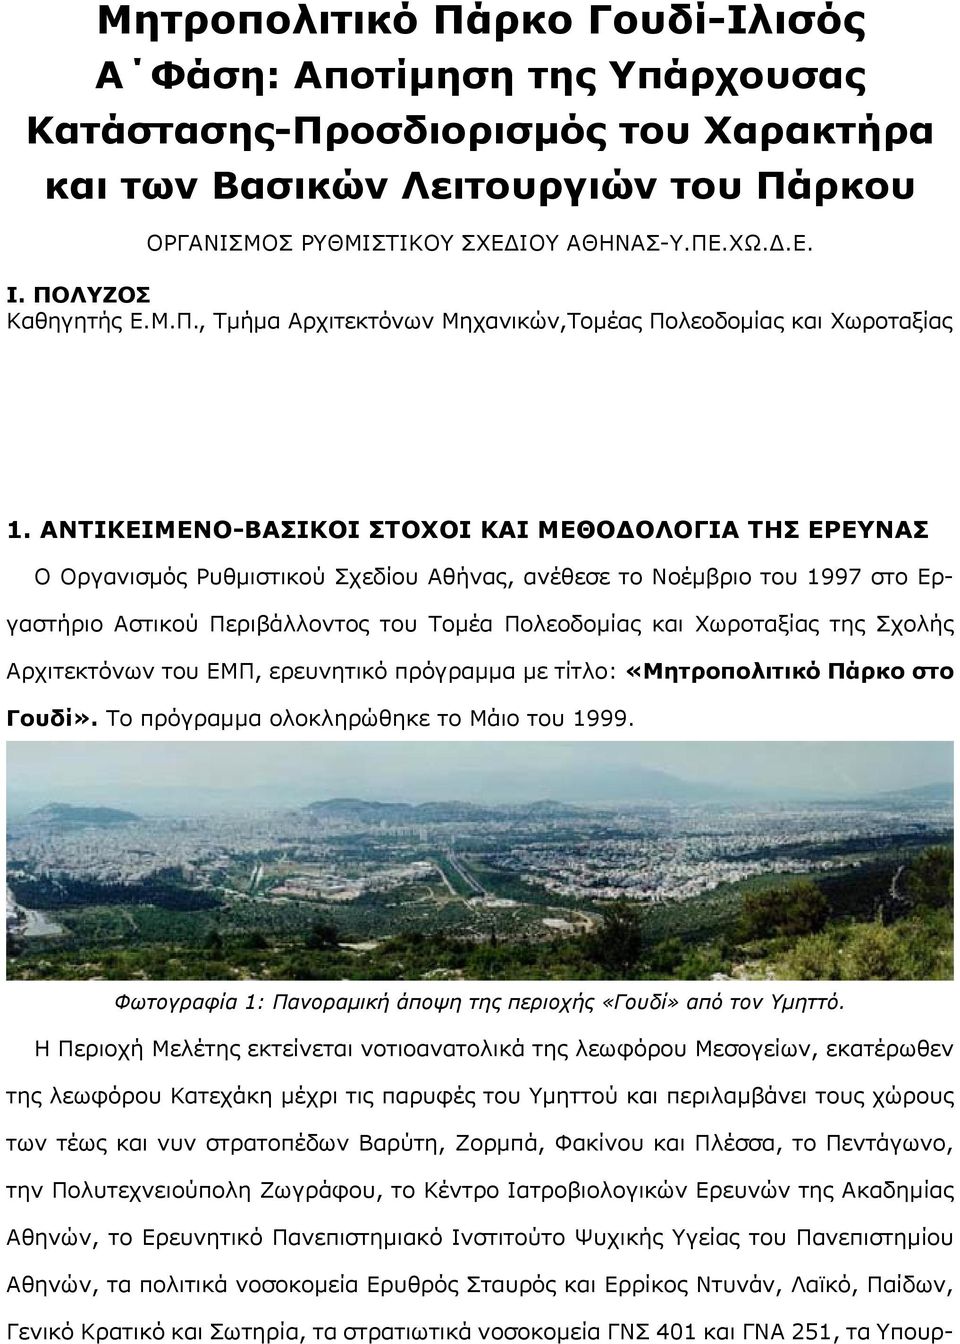 ΑΝΤΙΚΕΙΜΕΝΟ-ΒΑΣΙΚΟΙ ΣΤΟΧΟΙ ΚΑΙ ΜΕΘΟΔΟΛΟΓΙΑ ΤΗΣ ΕΡΕΥΝΑΣ Ο Οργανισμός Ρυθμιστικού Σχεδίου Αθήνας, ανέθεσε το Νοέμβριο του 1997 στο Εργαστήριο Αστικού Περιβάλλοντος του Τομέα Πολεοδομίας και Χωροταξίας